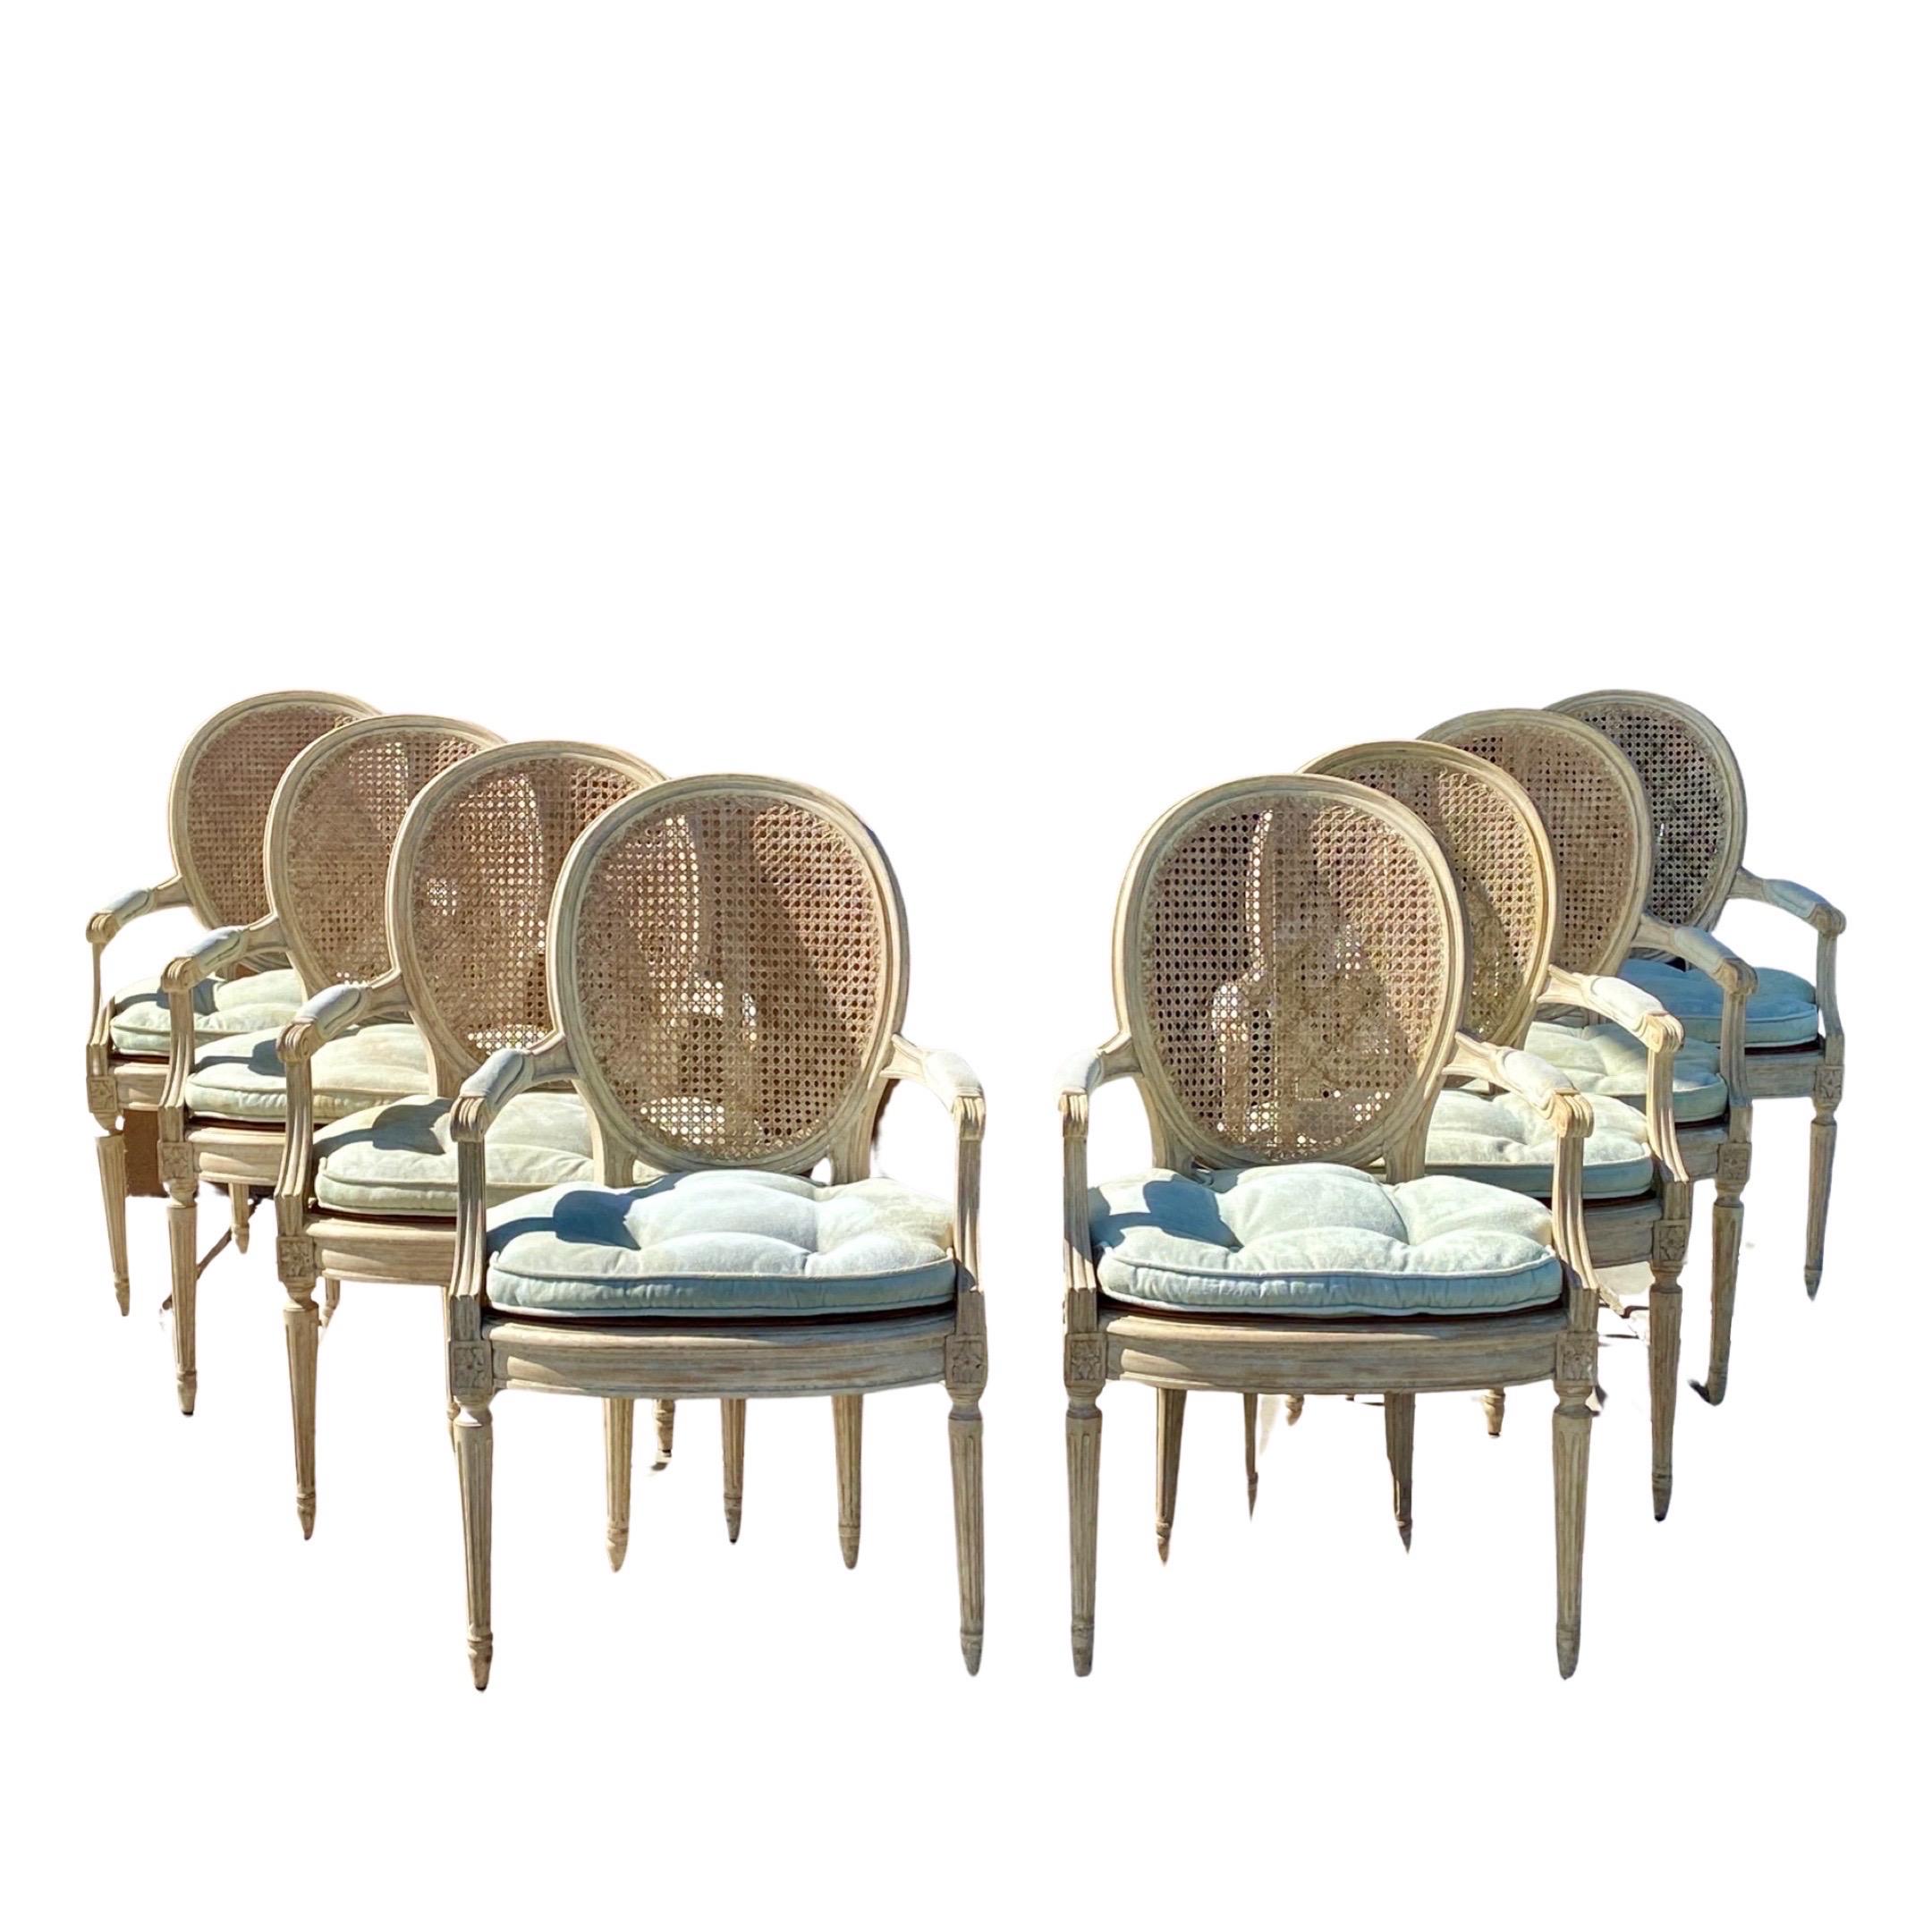 Ensemble de 8 chaises de salle à manger (toutes avec accoudoirs !) dans le style de la Maison Jansen provenant d'une propriété de Palm Springs qui était si spectaculaire ! Il a été conçu par le légendaire architecte d'intérieur Arthur Elrod pour la